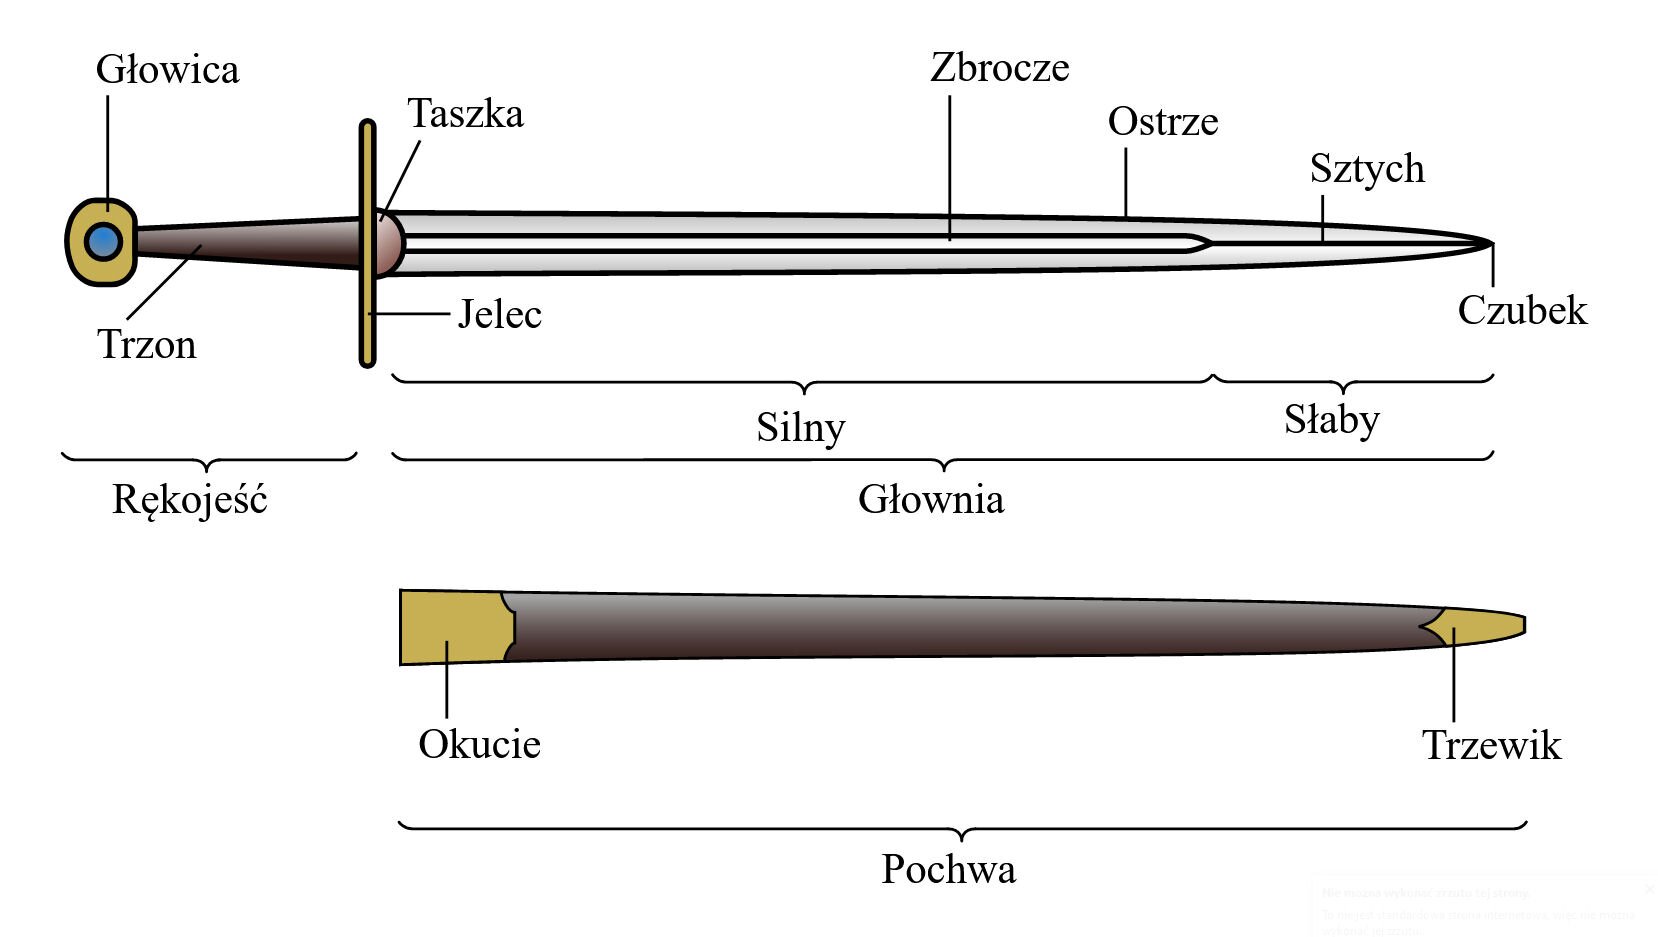 Ilustracja przedstawia miecz i pochwę z naniesionymi napisami na poszczególnych częściach; u góry przedstawiony jest miecz, na dole pochwa. Na górnym rysunku z lewej strony znajduje się część, za którą chwyta się miecz, czyli rękojeść z podpisami – okrągła głowica, trzon, jelec, który oddziela rękojeść od głowni i jest w stosunku do niej poprzecznie umiejscowiony, przy nim znajduje się taszka; dalej znajduje się metalowa ostra część miecza, czyli głownia, jej elementem jest zbrocze, przebiegające przez środkową część do sztychu, stanowiące wgłębienie; znajdujące się w końcowej części miecza z boku ostrze, sztych, czubek. Przy głowni miecza znajdują się oznaczenia: "silny" przy głównej części i "słaby" przy końcu. Na dolnym rysunku ukazana jest pochwa miecza – po lewej stronie znajduje się okucie, po prawej, na końcu trzewik.